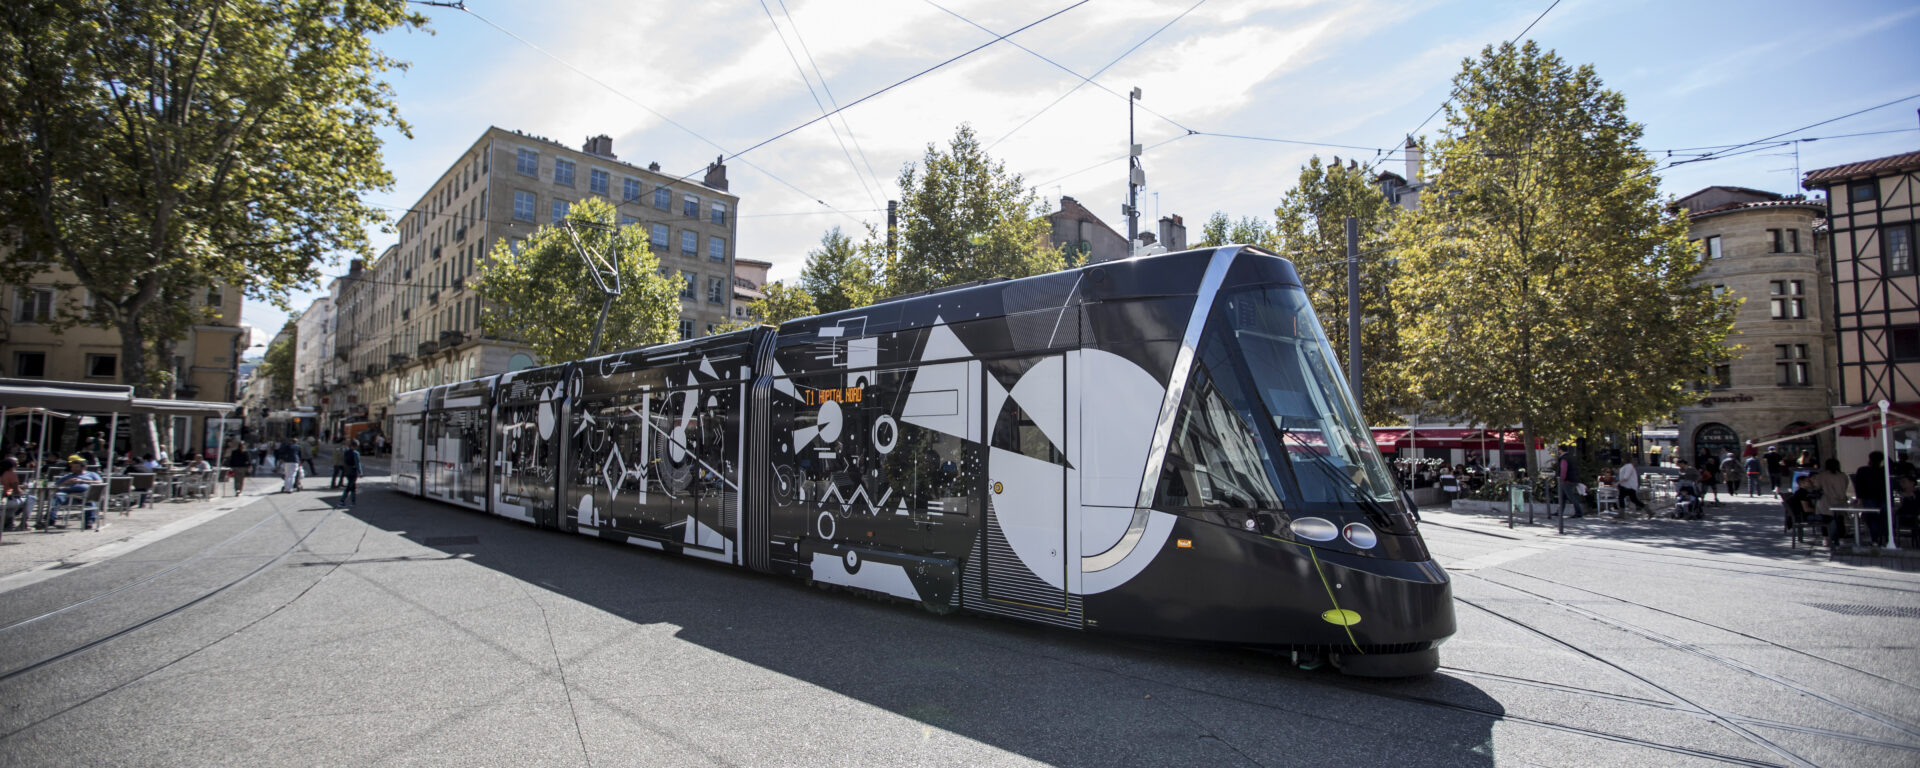 Tramway de Saint Etienne STAS avec un habillage design, dans le cadre du concours international « Un tramway nommé design »